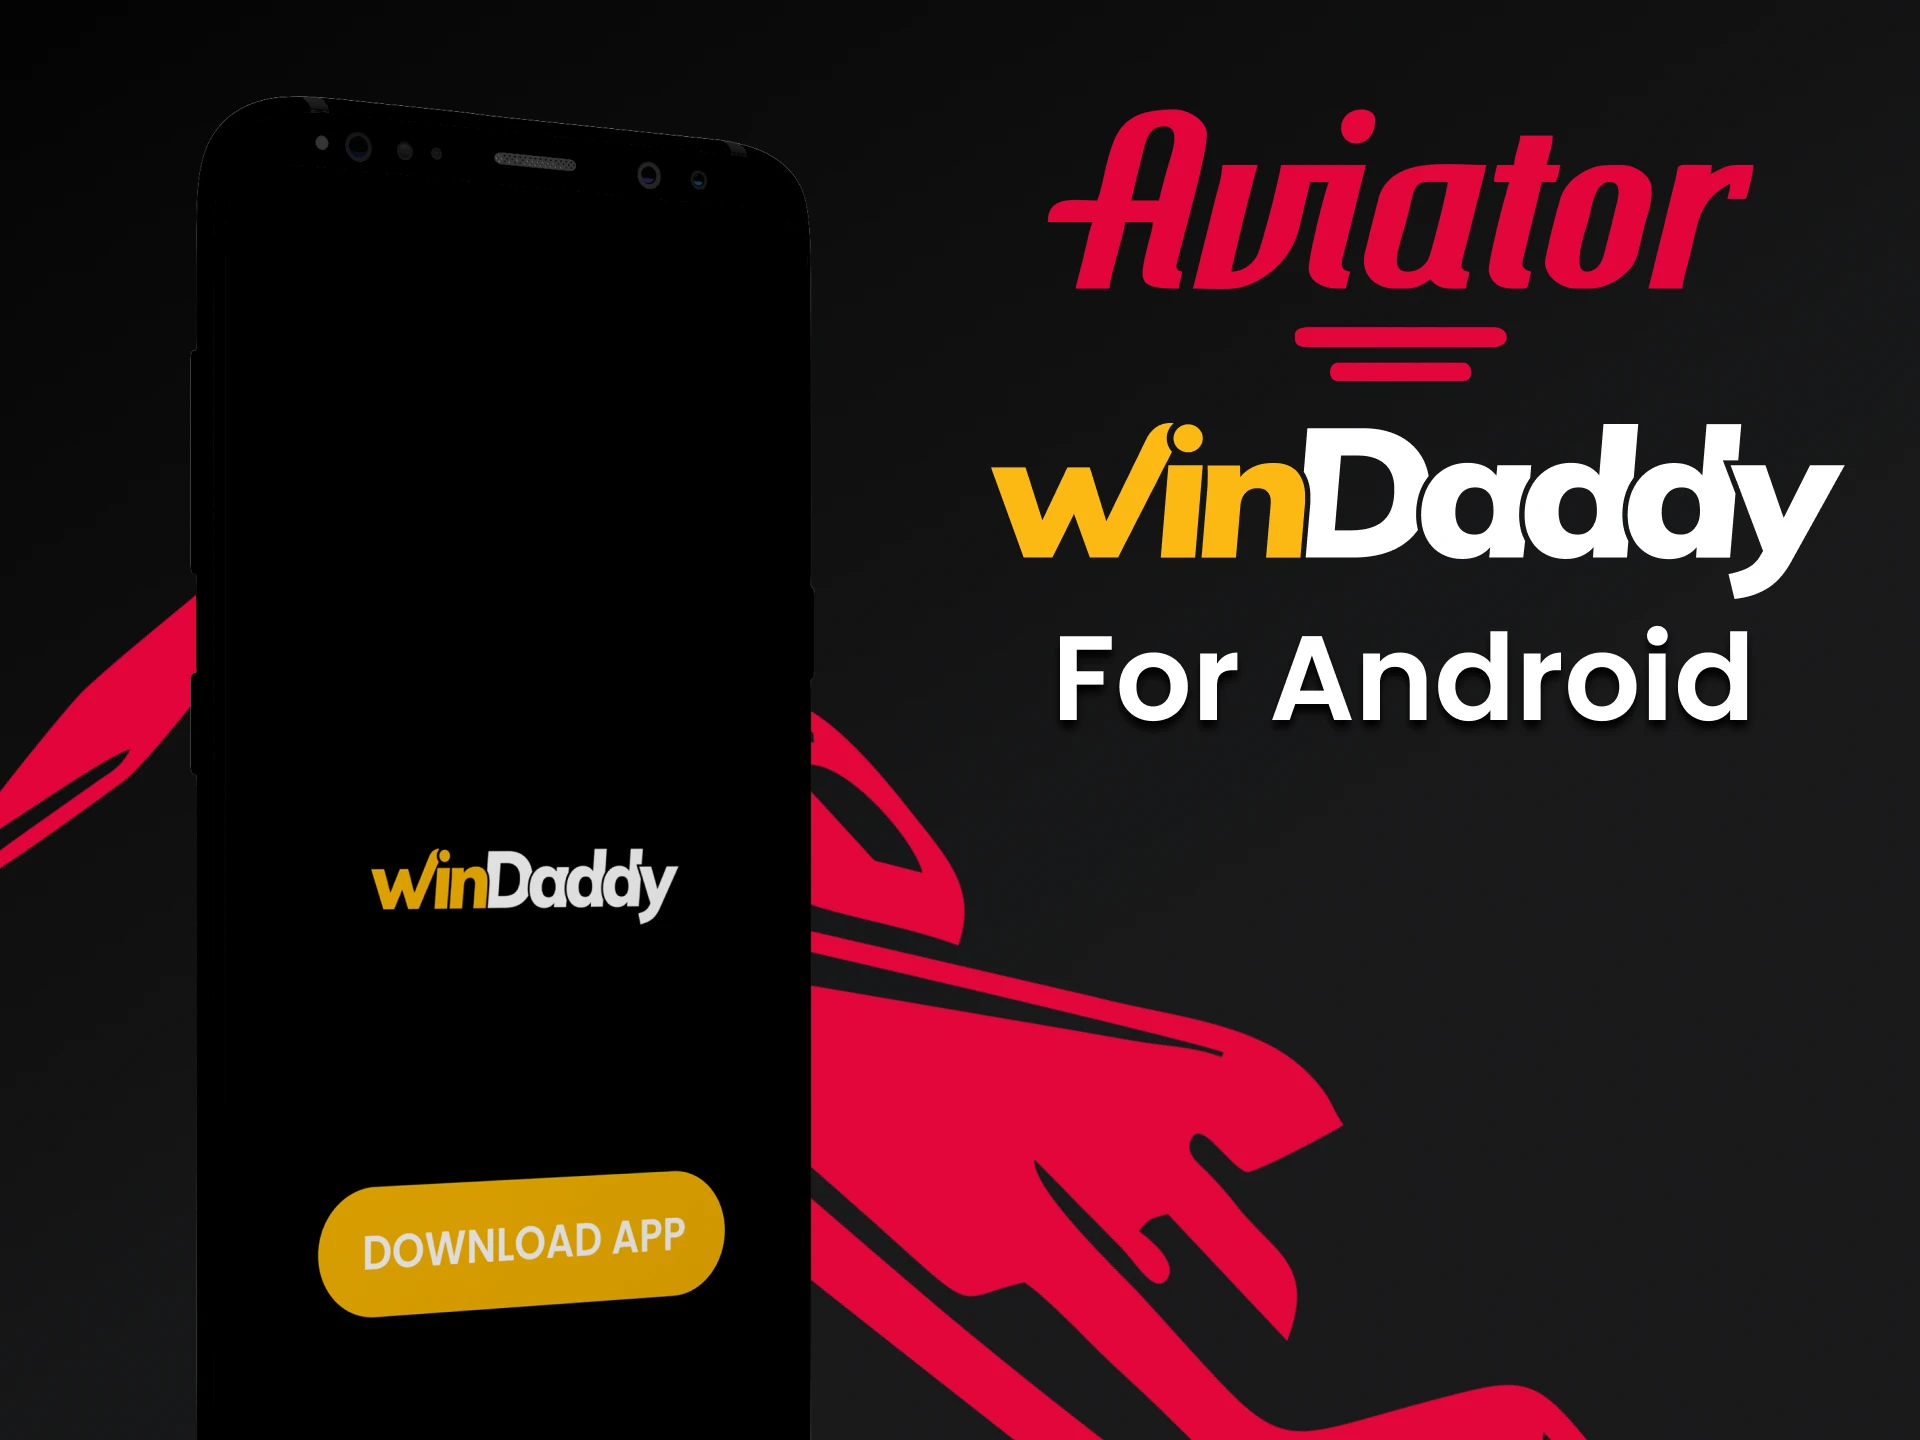 Faça o download do aplicativo WinDaddy para Android para jogar o Aviator.